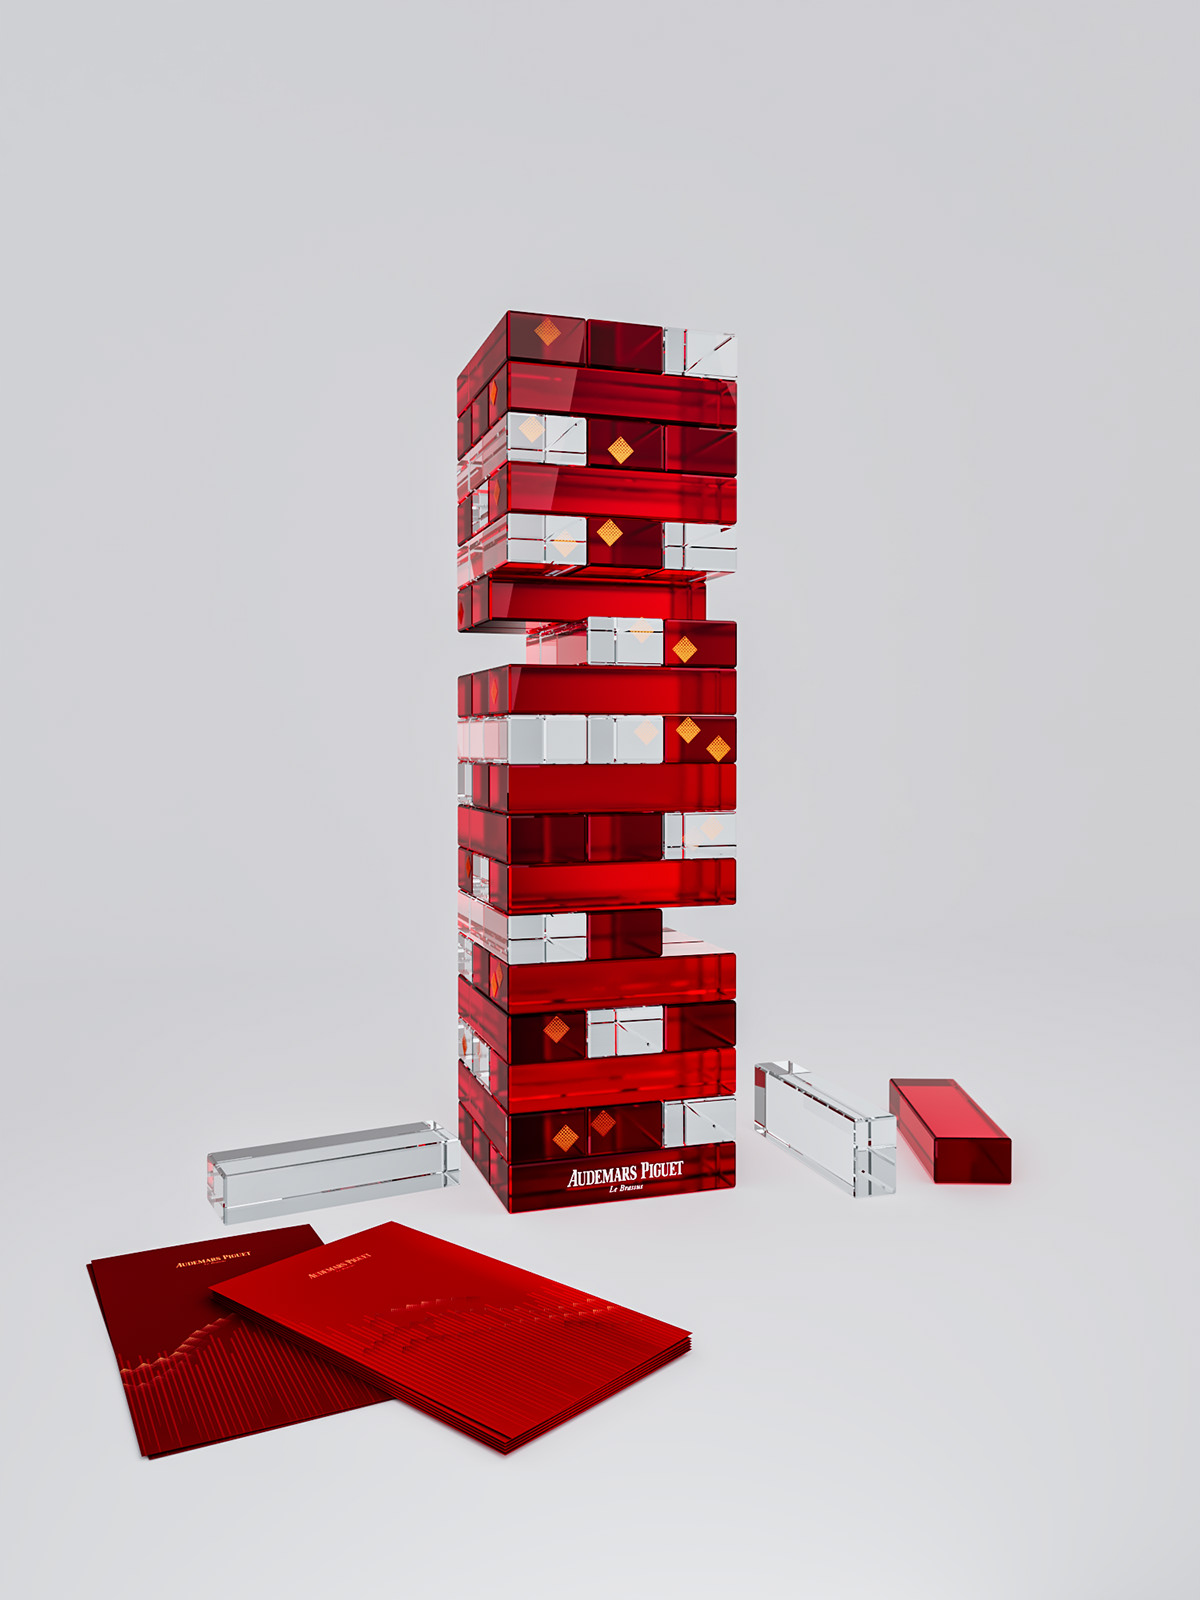 design gifts cny 3D Render building blocks AP giftware